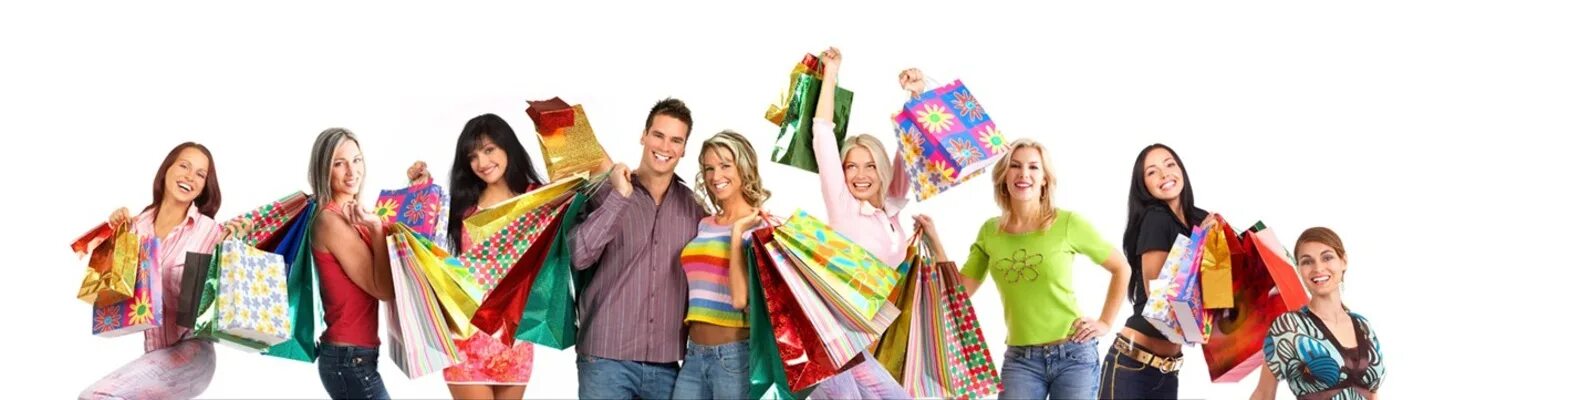 Совместные покупки г улан. Люди с покупками. Одежда люди с покупками. Совместные покупки баннер. Веселые покупки.